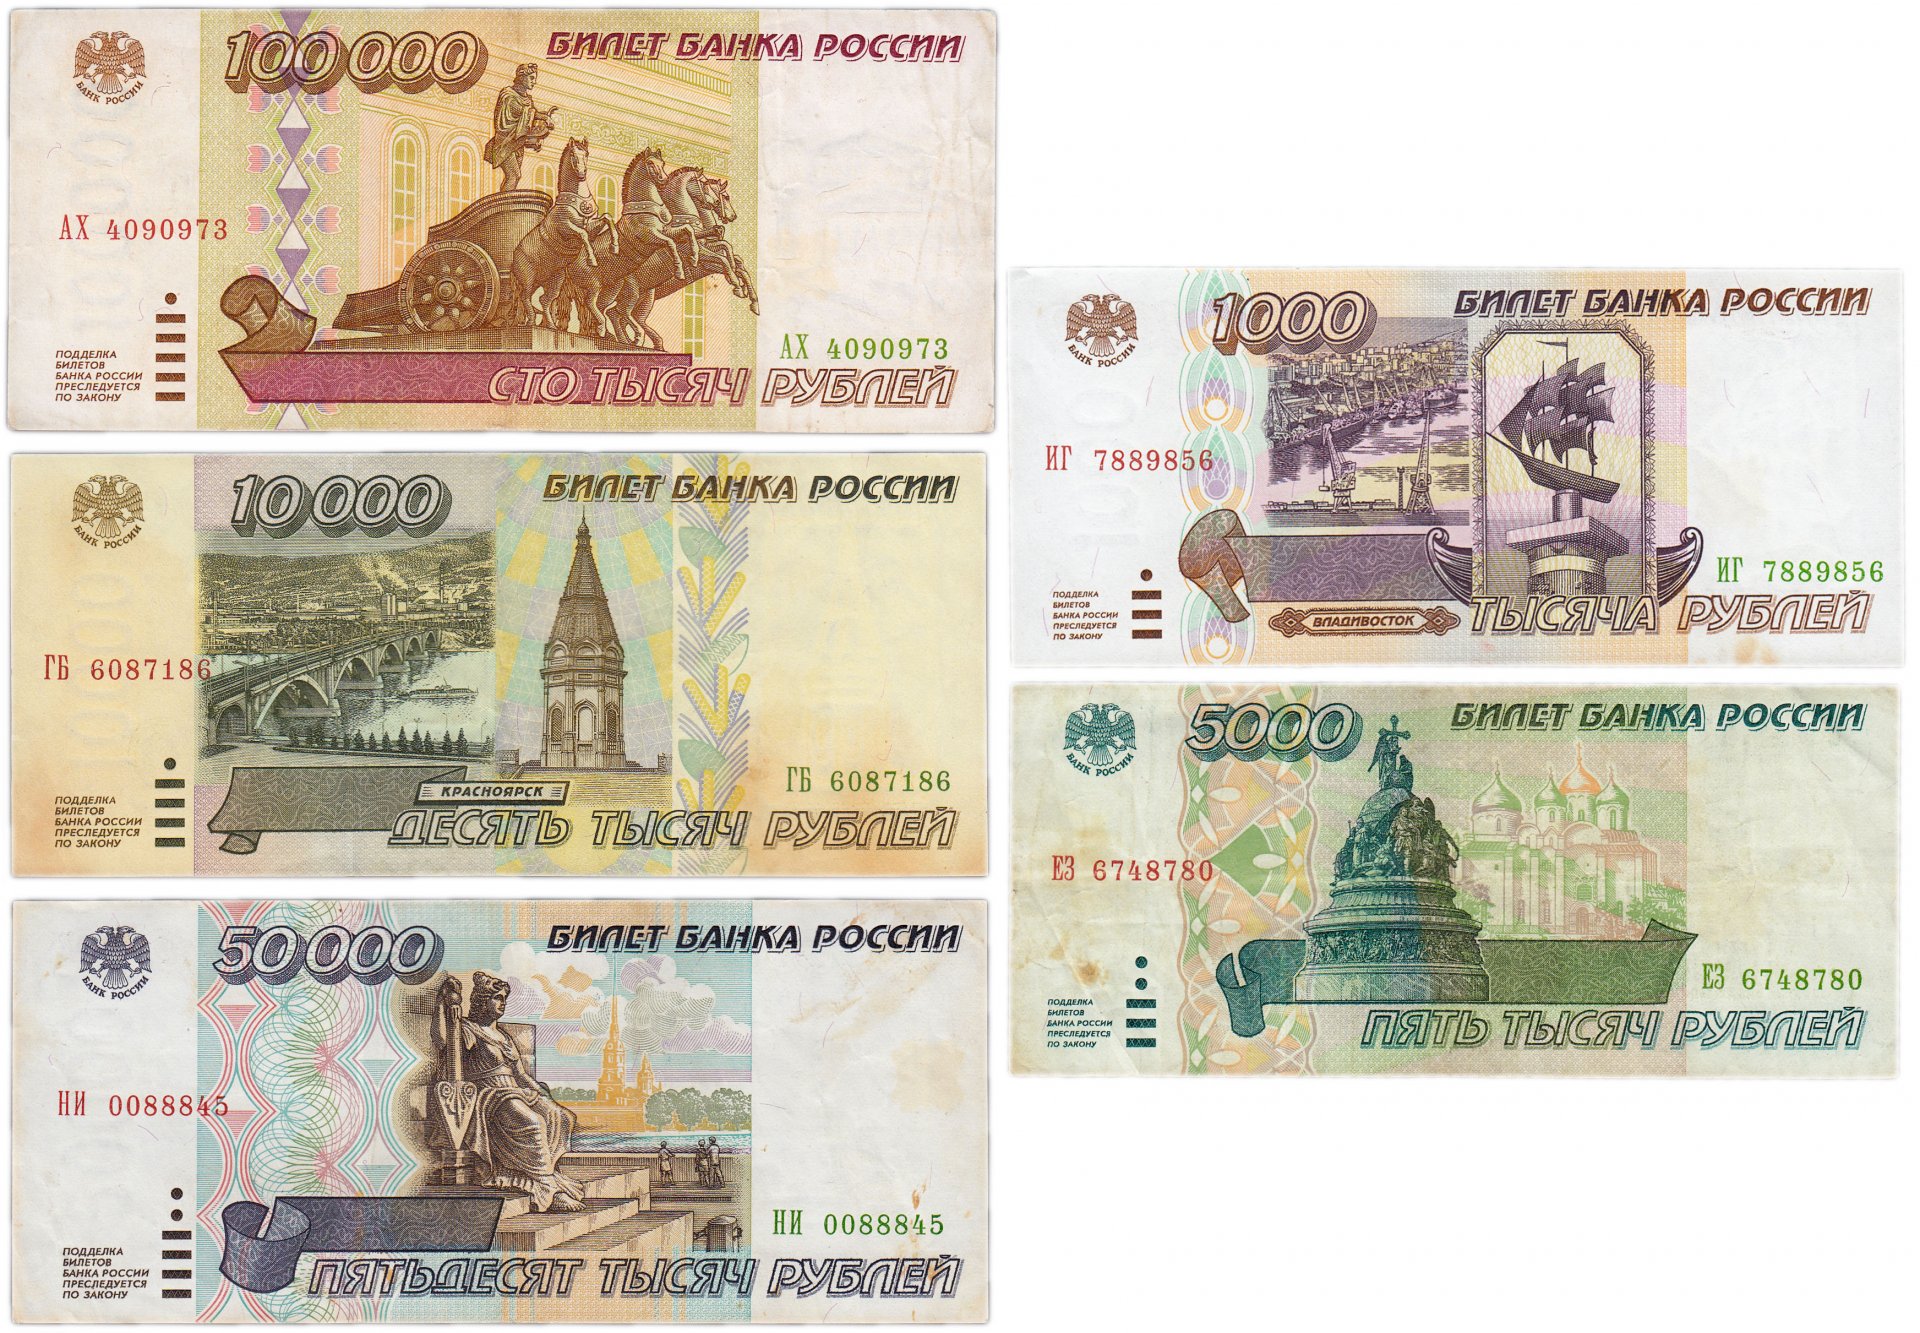 1 цена купюра. Купюра 100000 рублей 1995 года. Купюры рублей 1995 года. Банкнота 100 тысяч рублей. Банкнота 100000 рублей 1995 года.